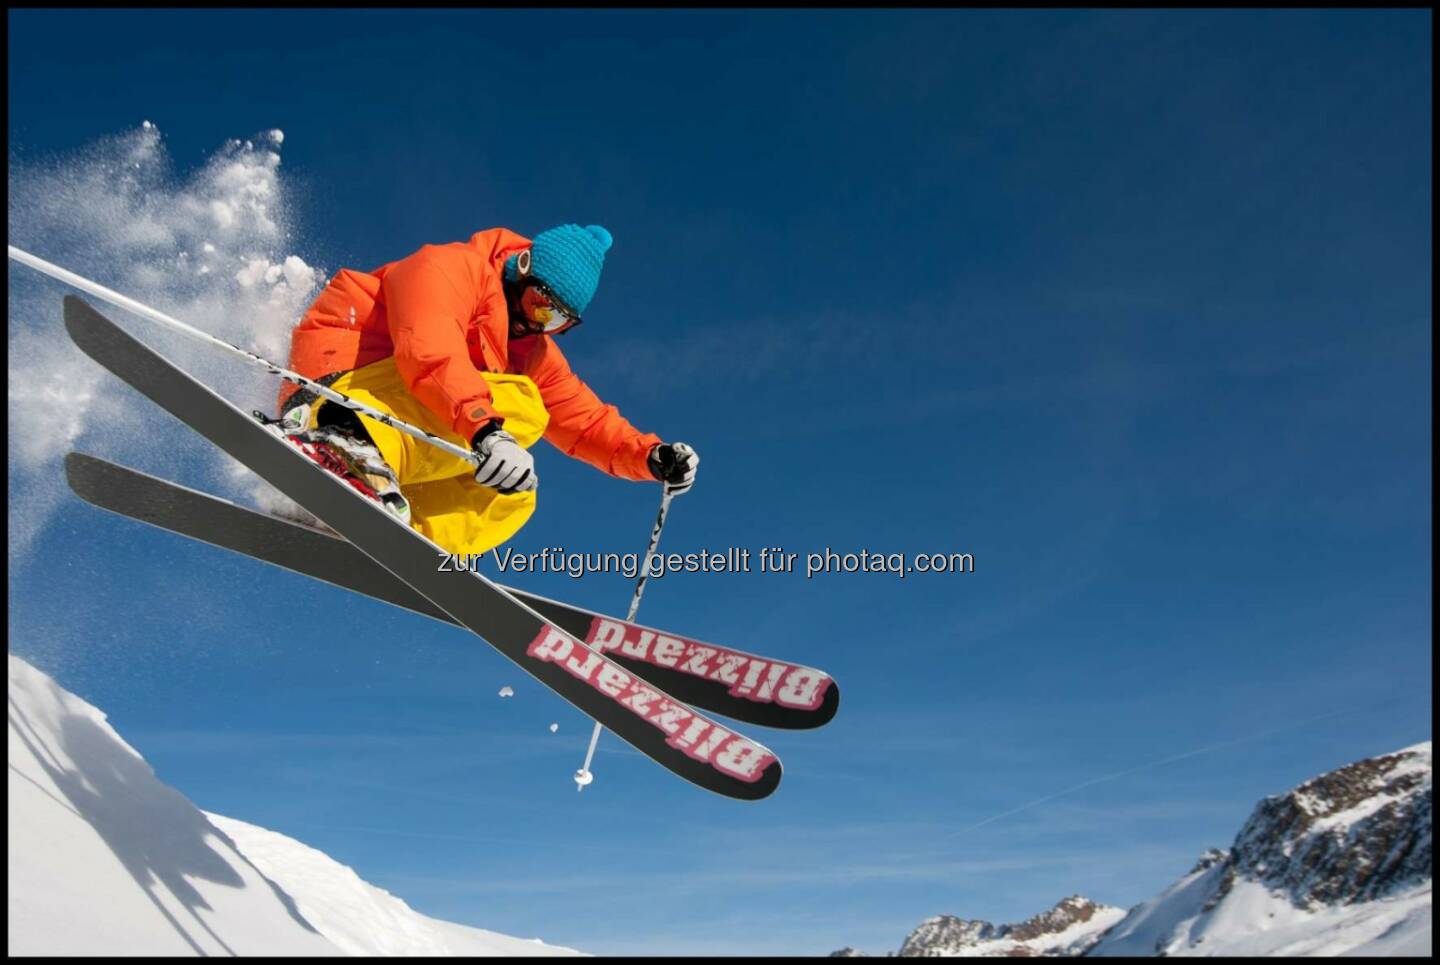 Seit 2013 nutzt Blizzard Ski die Adobe® Creative Cloud(TM) for Teams, um Skidesigns und Marketingmaterialien zu produzieren und um administrative Abläufe zu vereinfachen. Damit bleibt mehr Zeit für Kreativität und die Konzentration auf die Kernaufgaben - was für das mittelständische Unternehmen ein wesentliches Entscheidungskriterium darstellte. (Bild: Blizzard Ski)